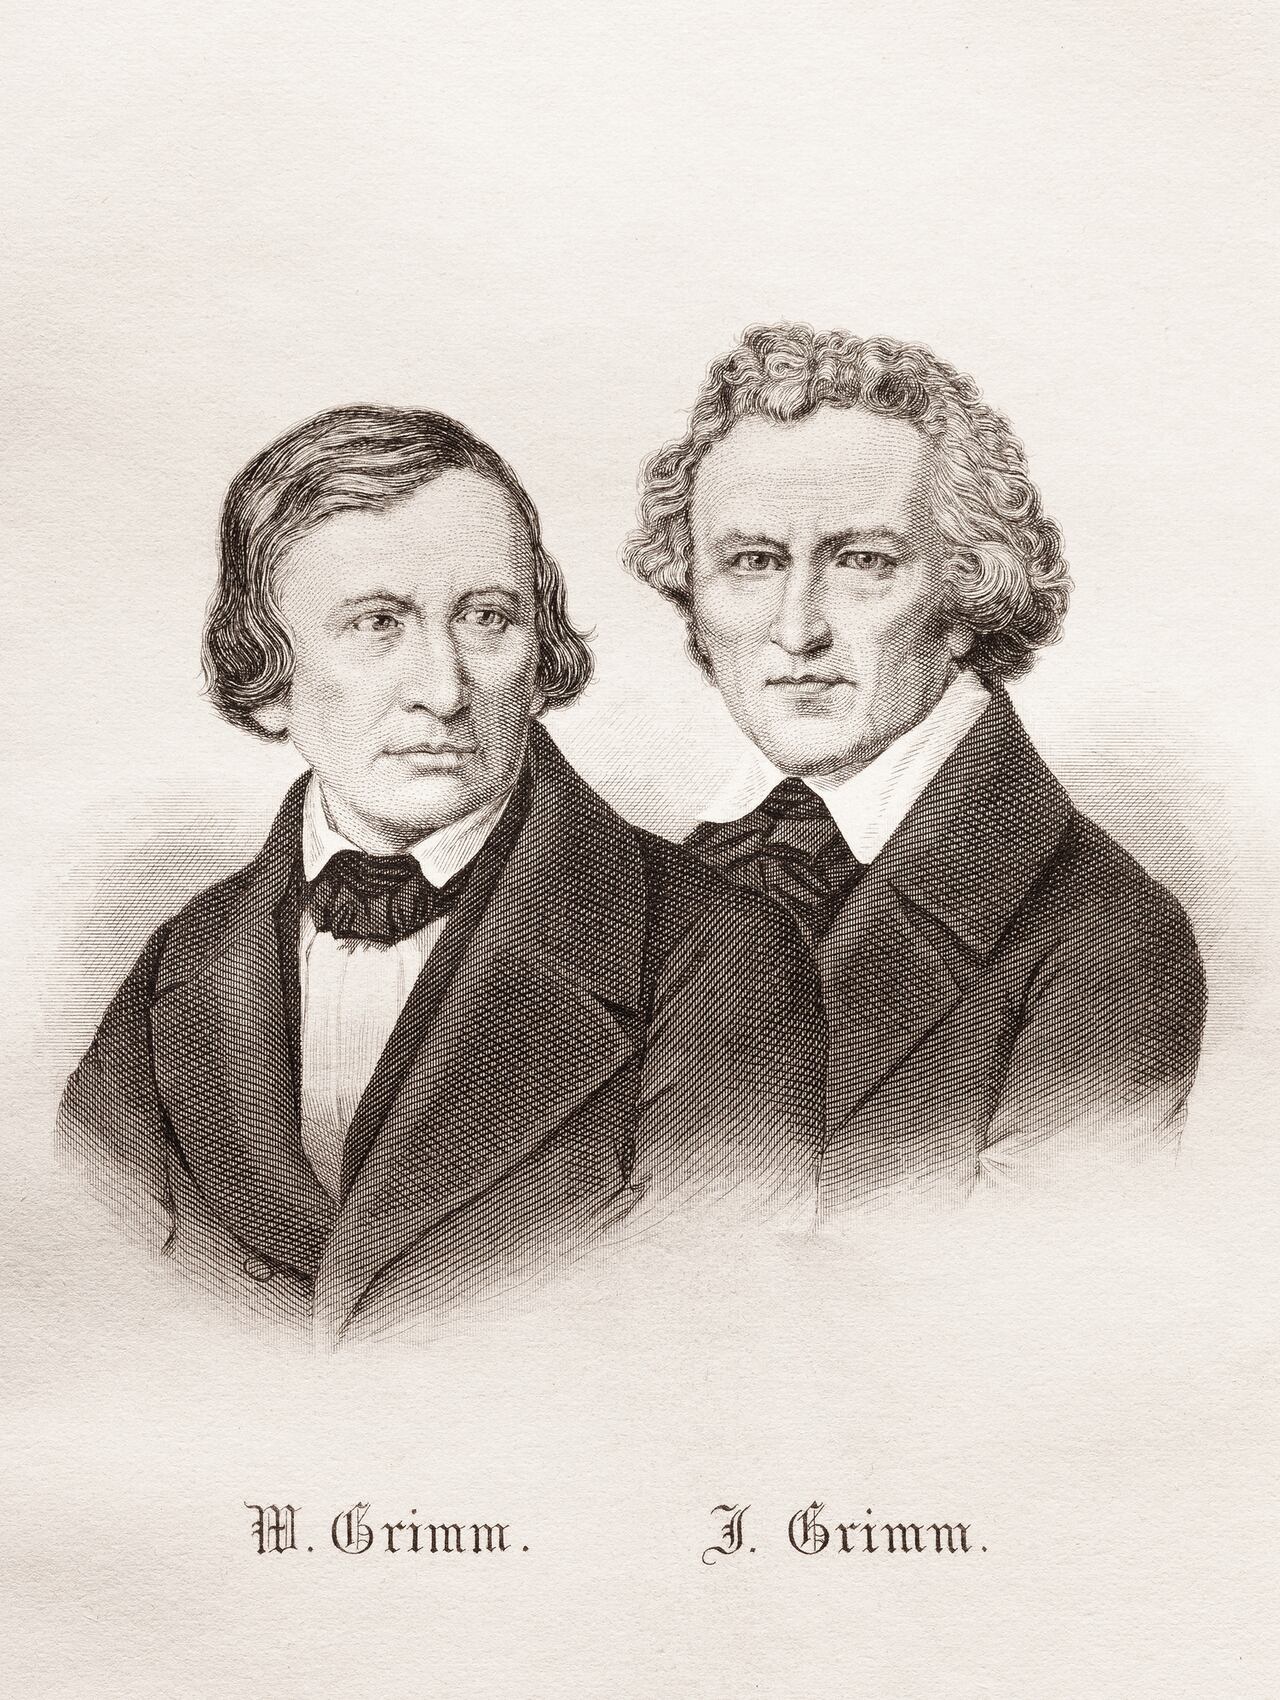 Wilhelm Grimm y Jacob Grimm, los famosos hermanos Grimm